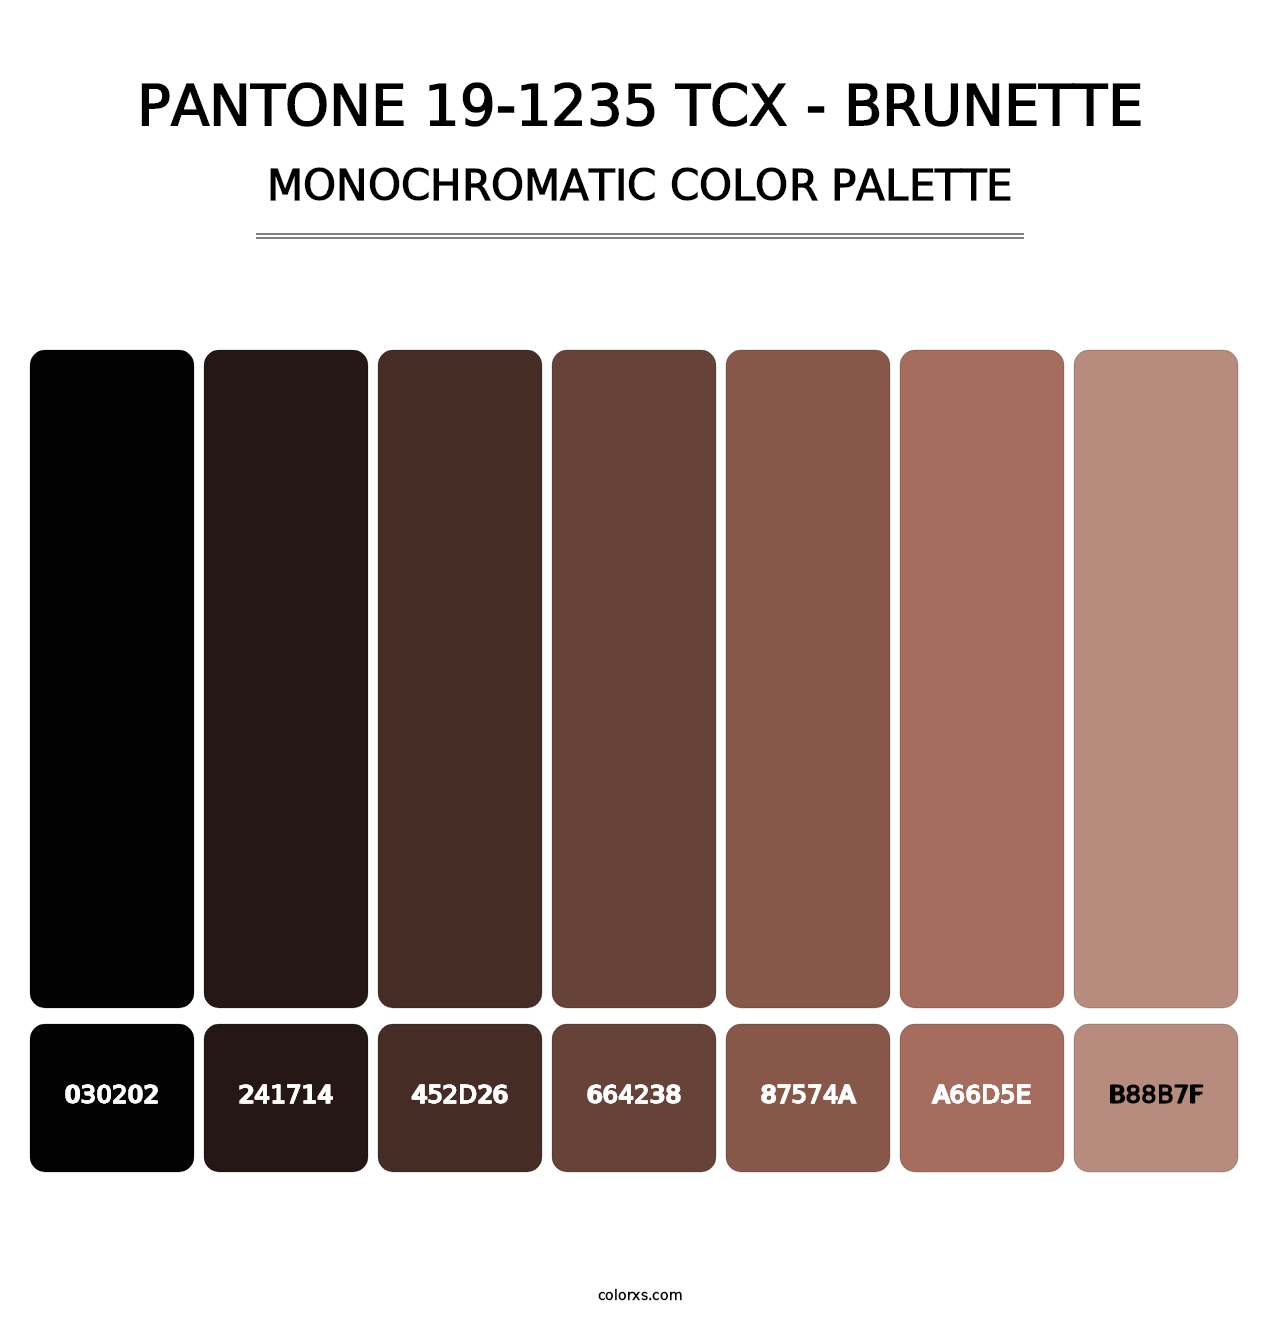 PANTONE 19-1235 TCX - Brunette - Monochromatic Color Palette